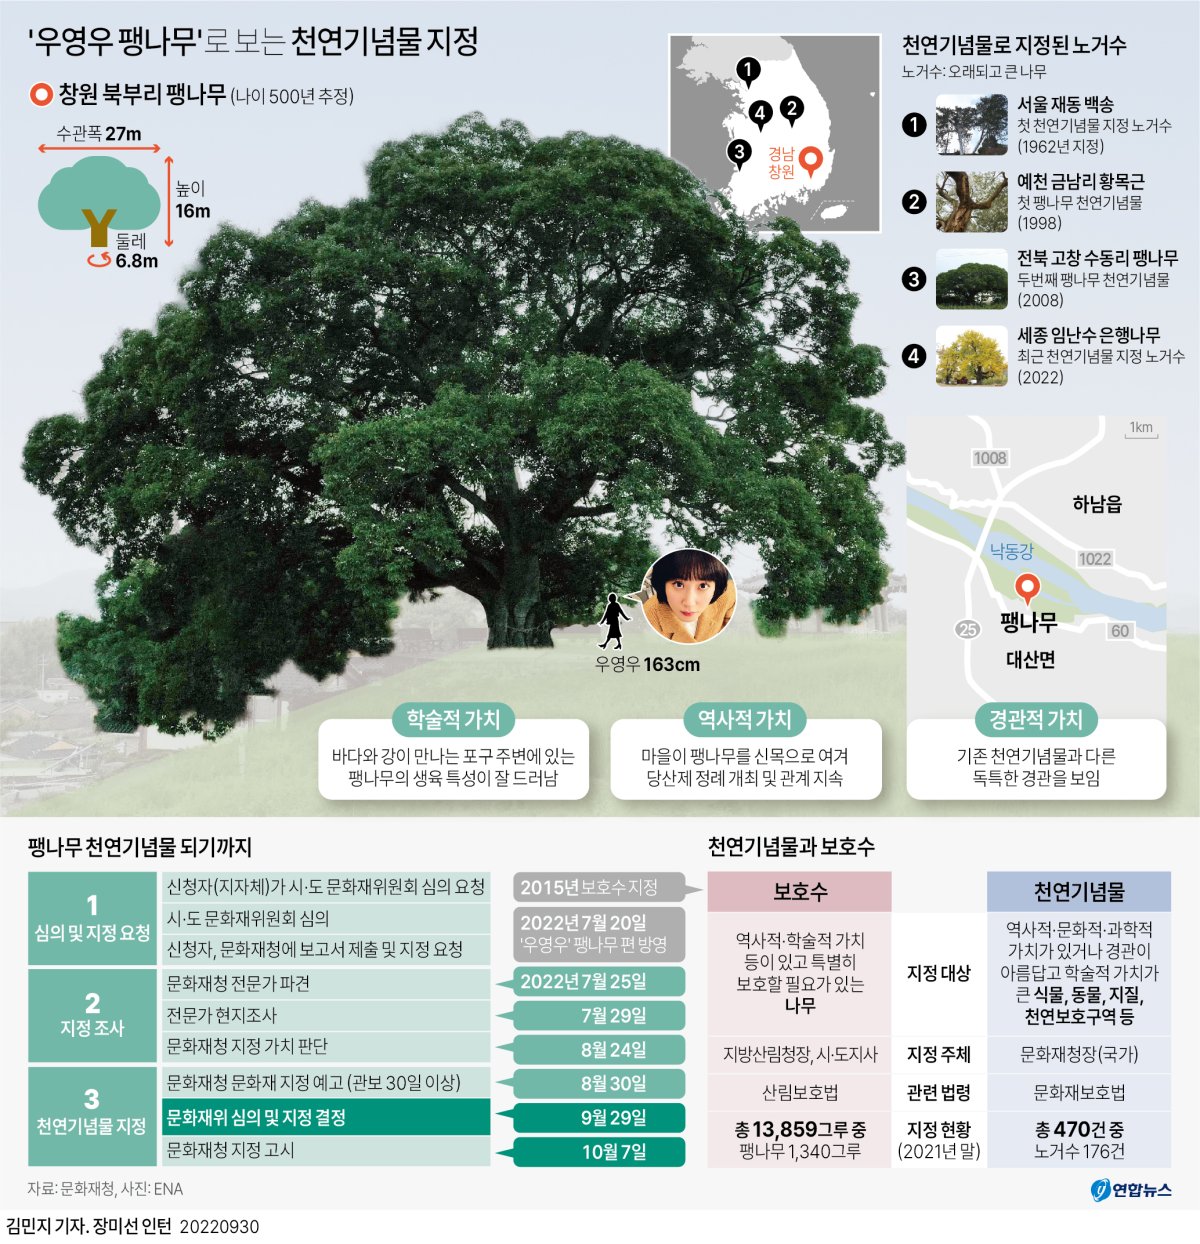  '우영우 팽나무'로 보는 천연기념물 지정